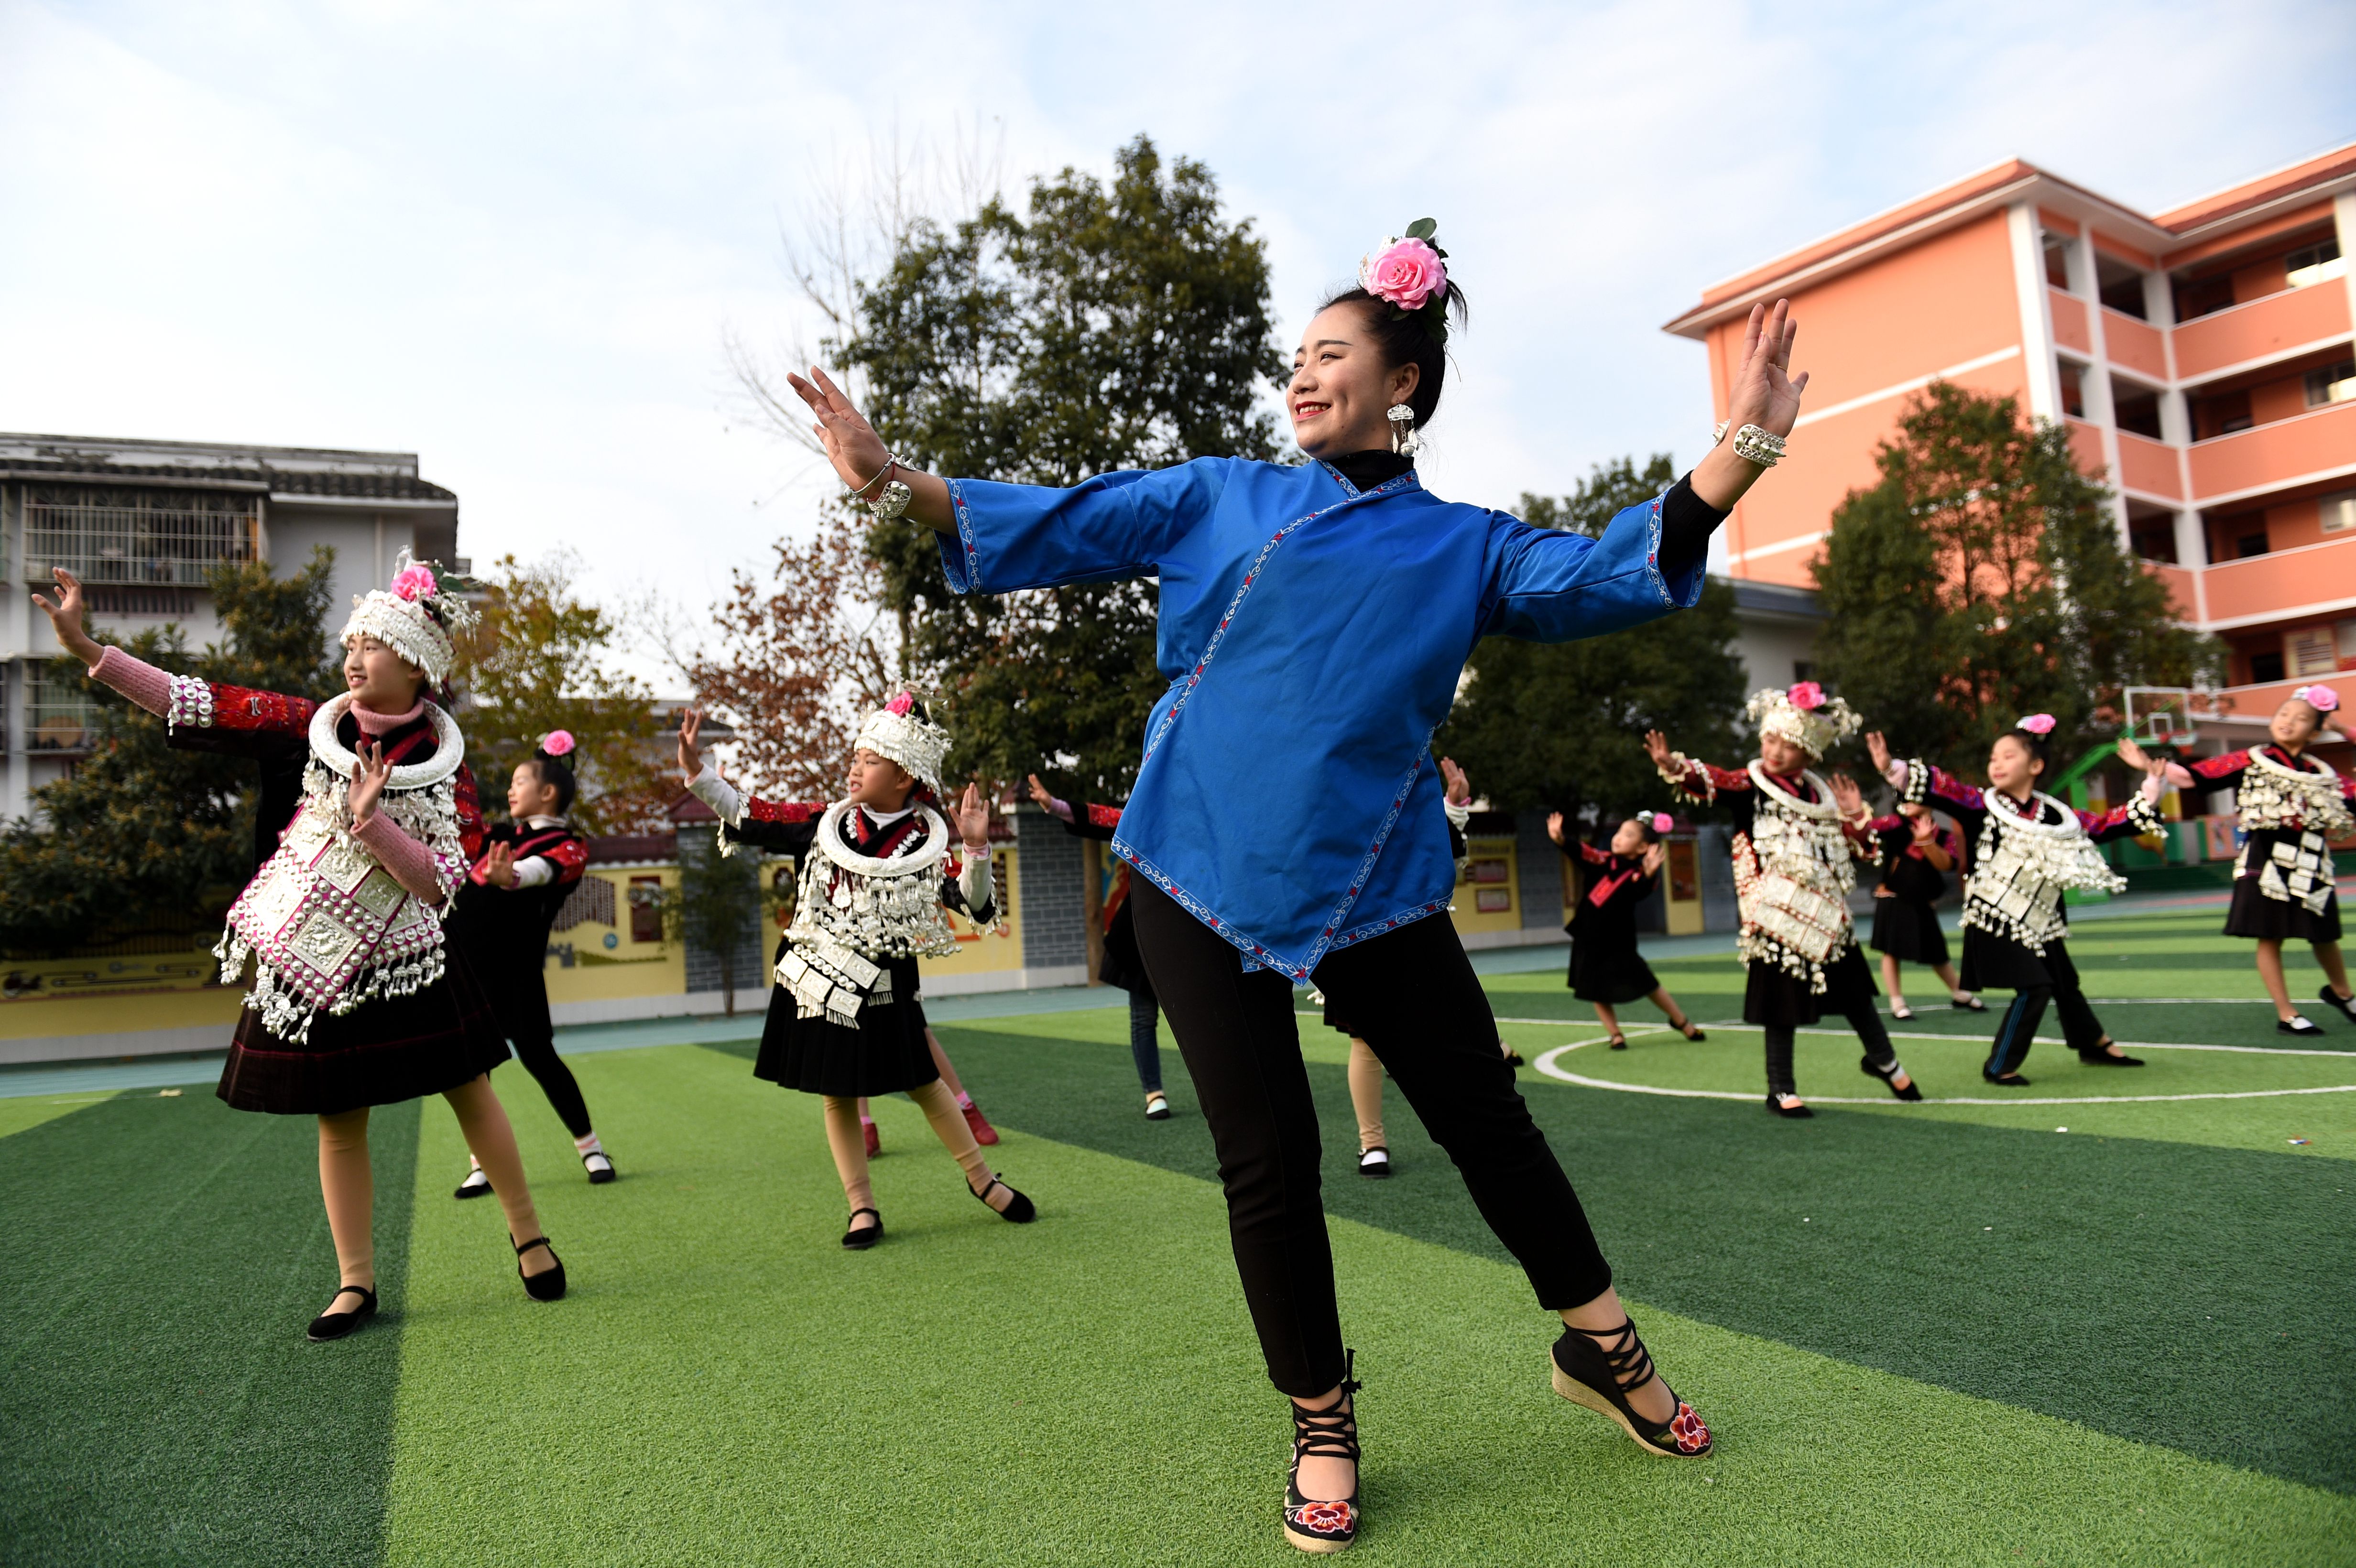 如今,反排木鼓舞作为台江苗族地区民间艺术,广泛活跃于当地学校